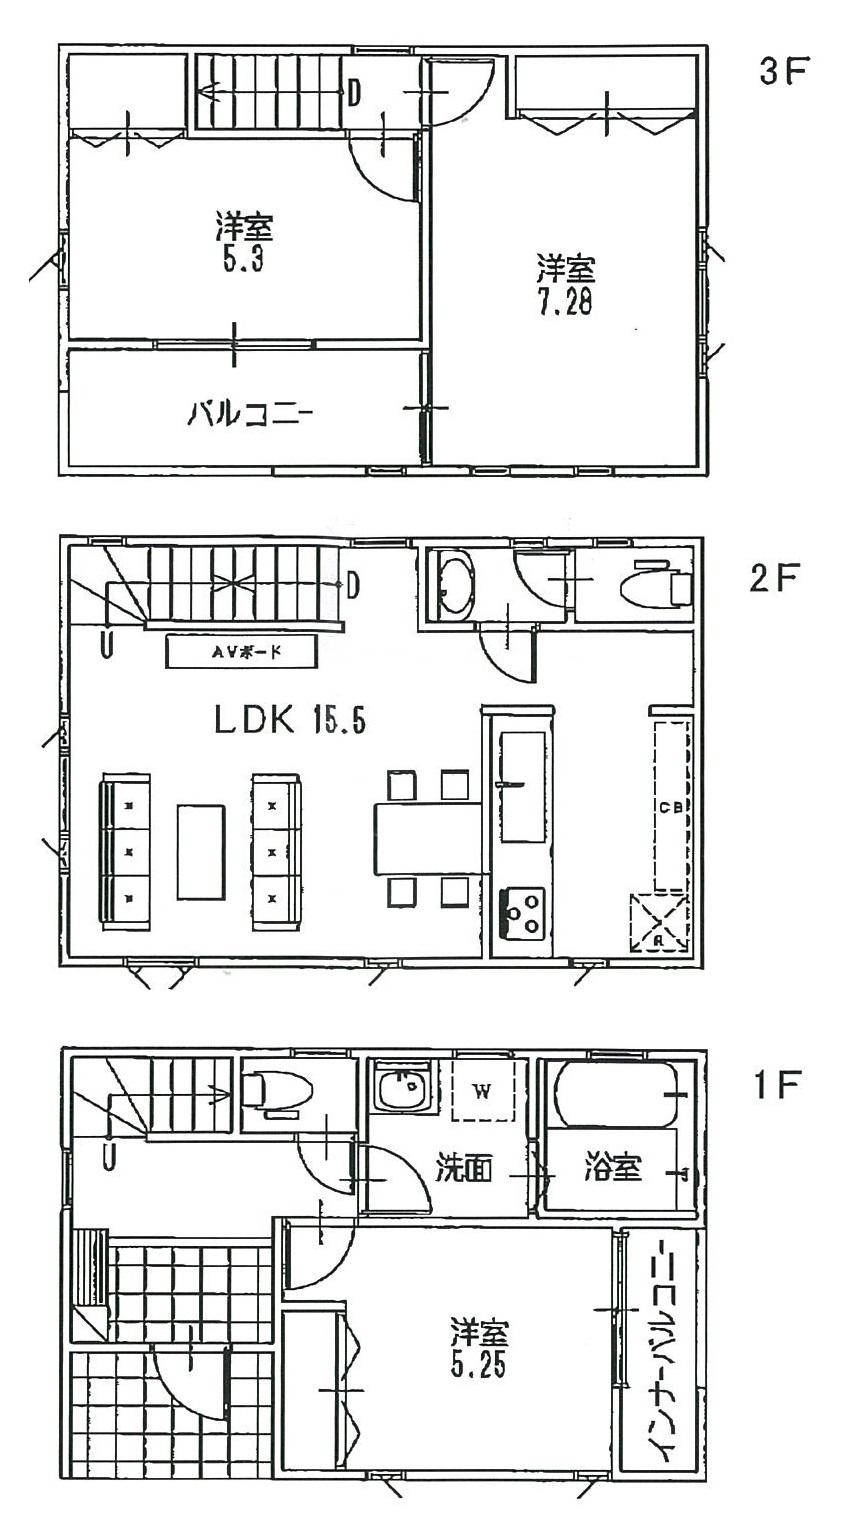 Floor plan. (A Building), Price 37,800,000 yen, 3LDK, Land area 63.82 sq m , Building area 86.05 sq m